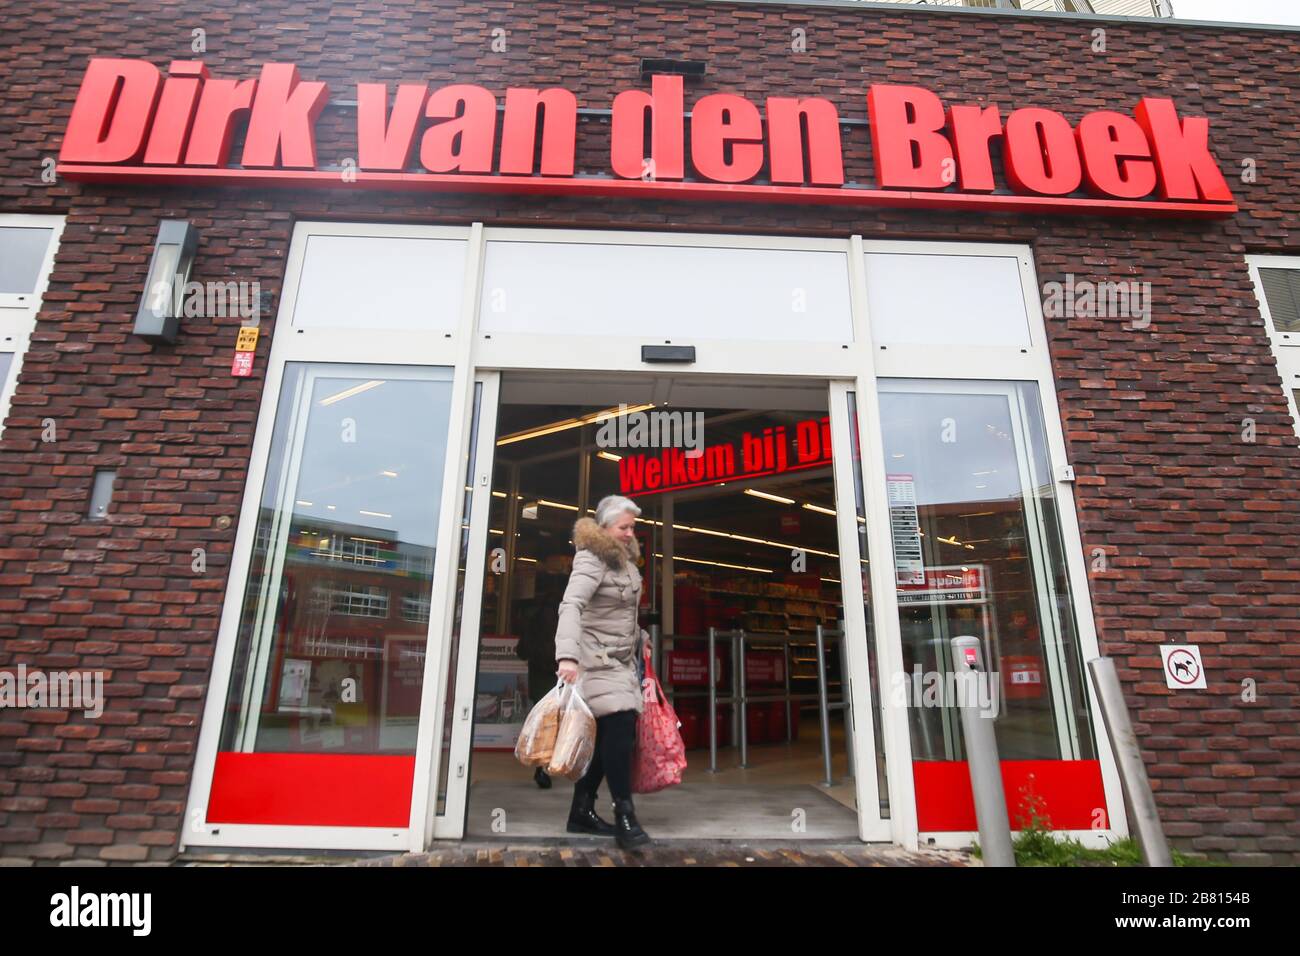 Dirk van de broek hi-res stock photography and images - Alamy